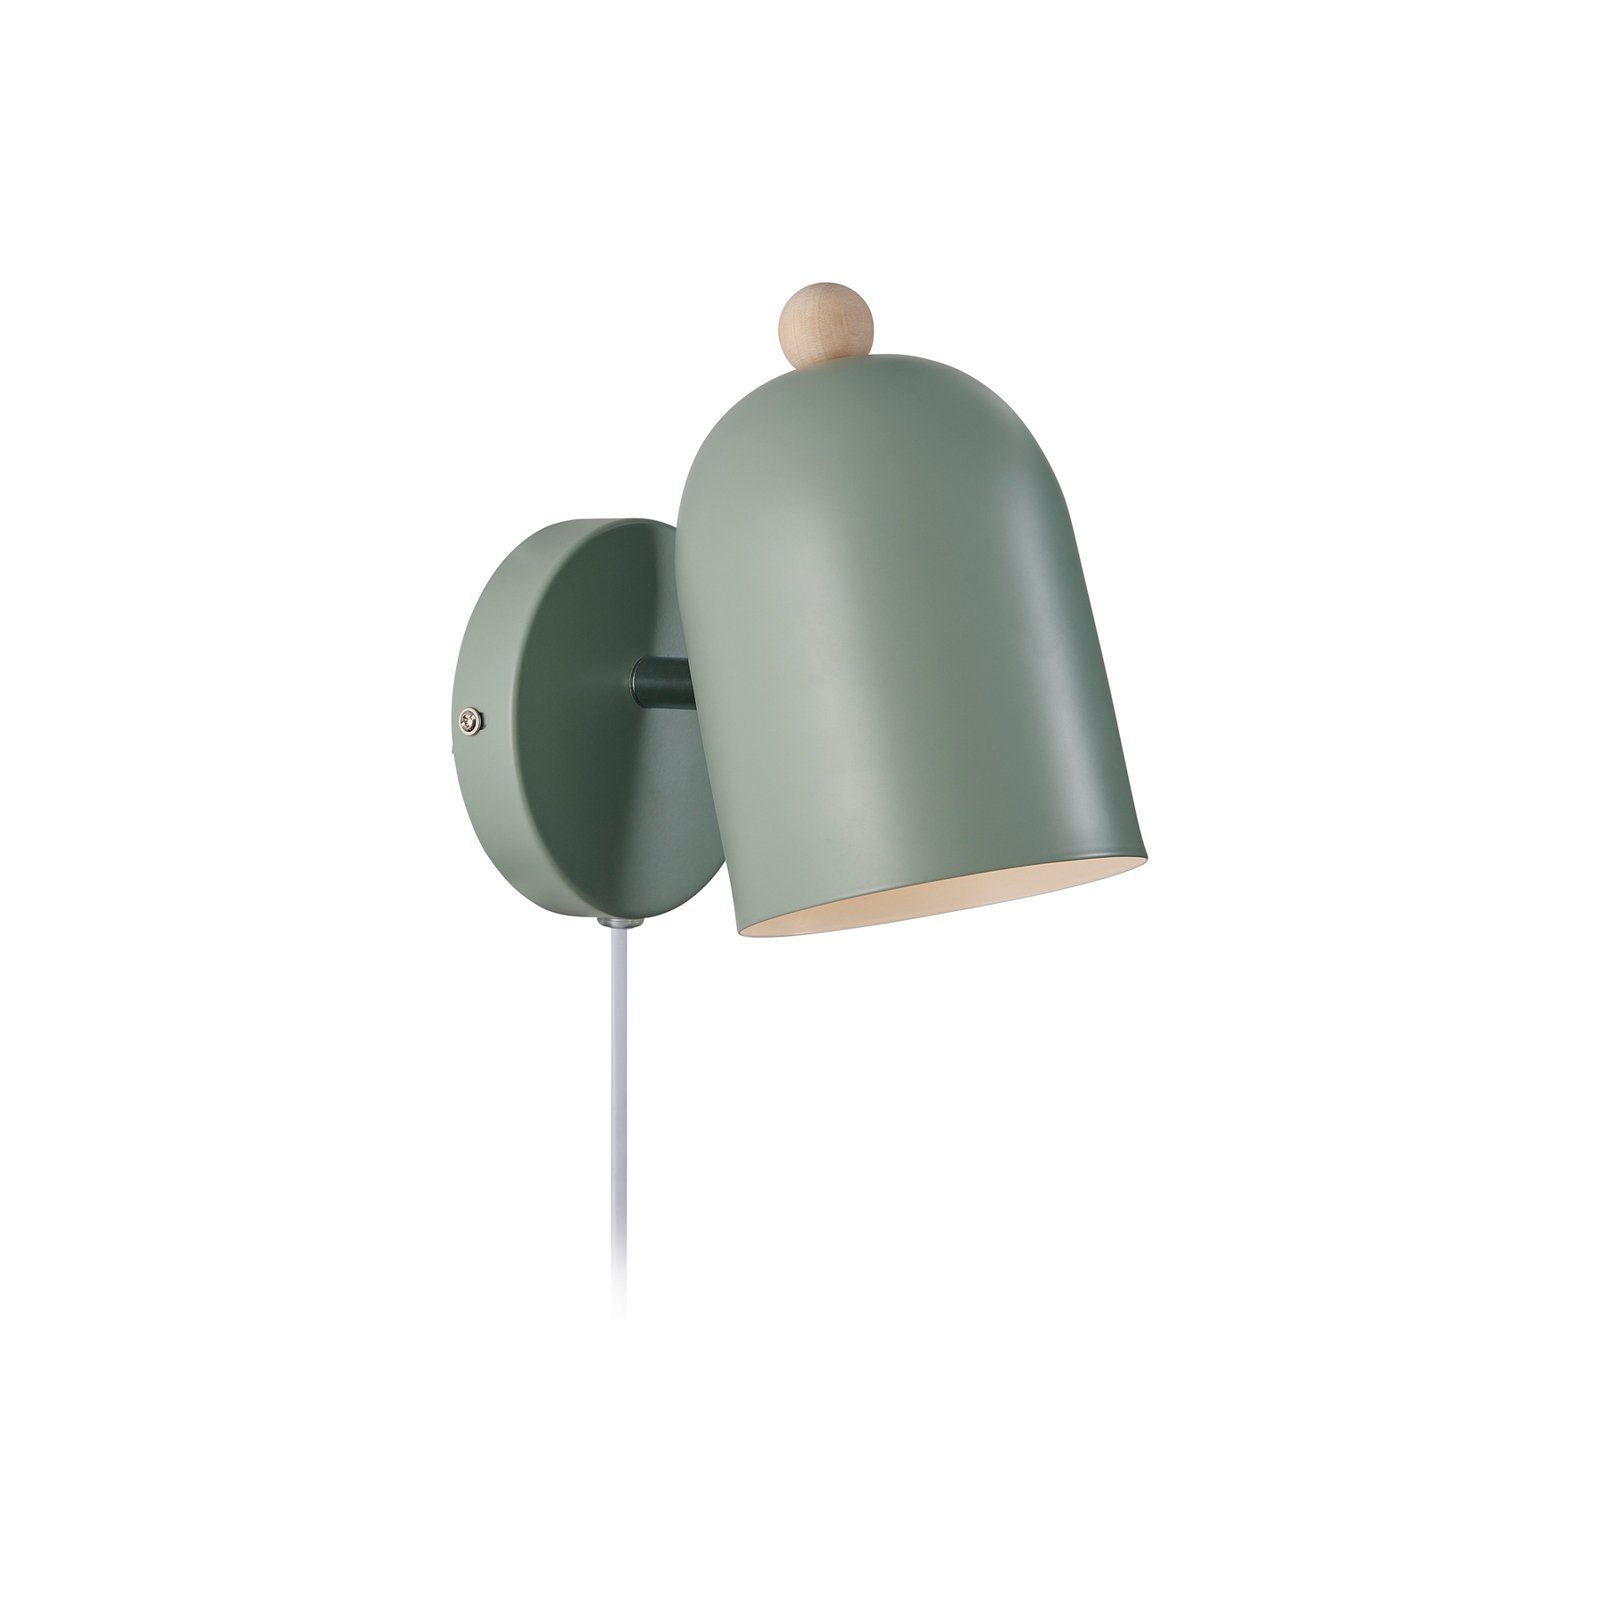 Gaston zidna svjetiljka s kablom i utikačem, metalna, zelena